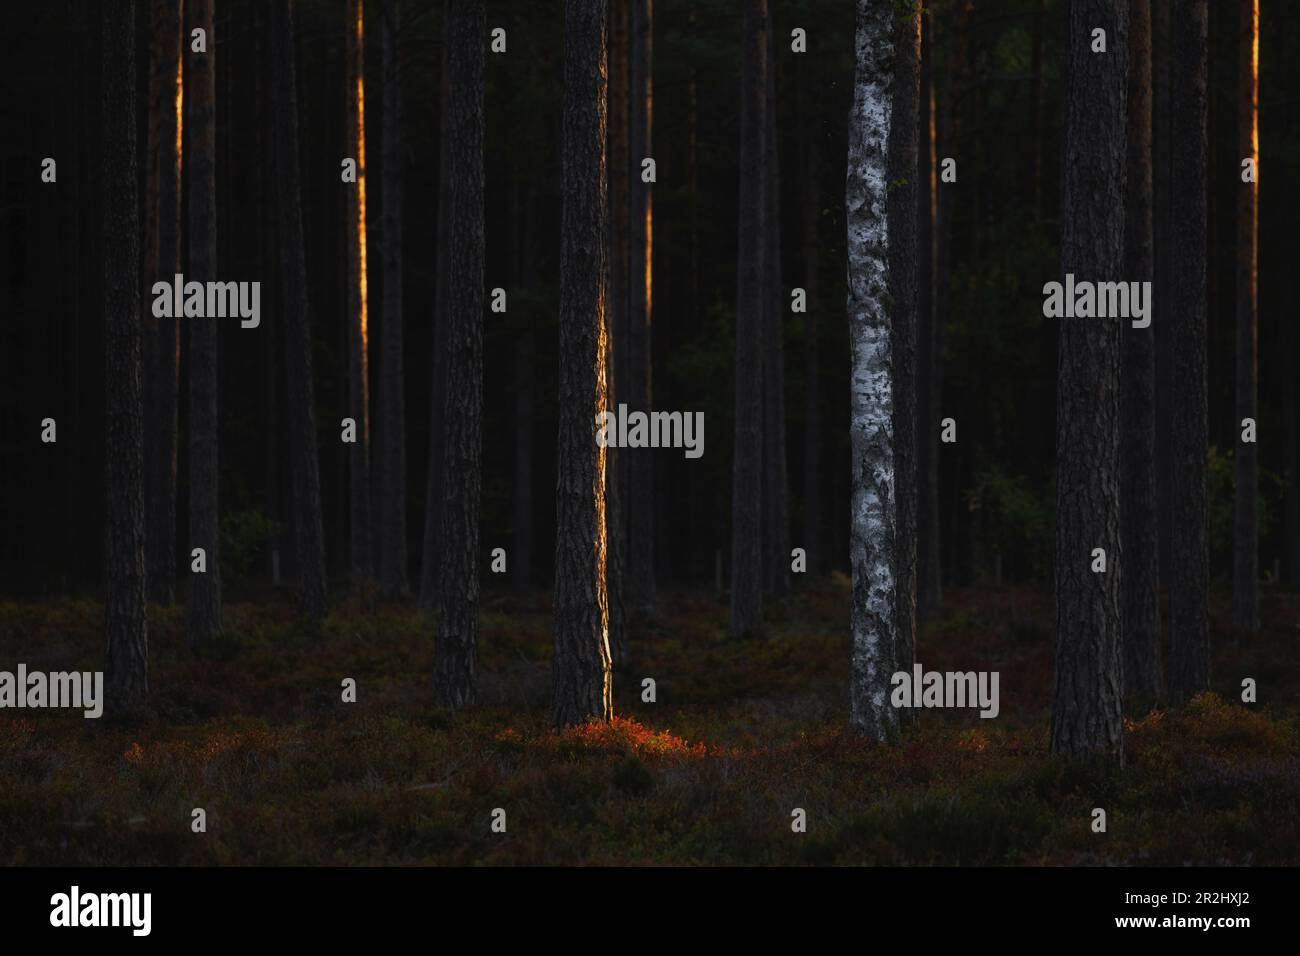 Im Wald stehen mehrere dunkle Fichtenstämme. Eine helle Birke dazwischen. Teilweise von der Sonne beleuchtet. Byxelkrok, Oland, Schweden Stockfoto